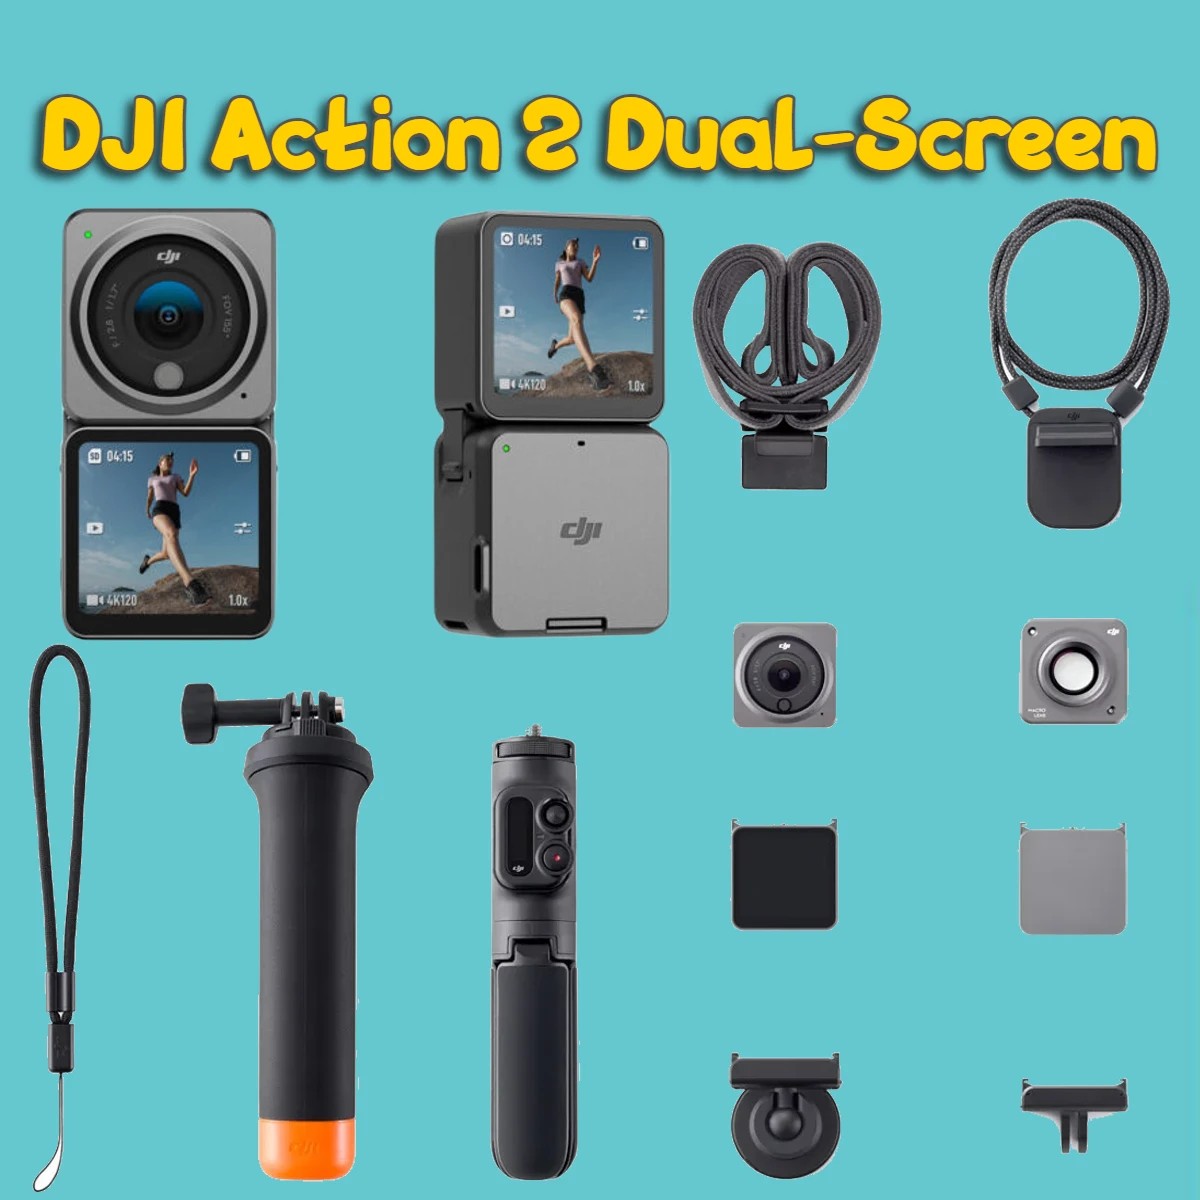 DJI Action 2 Dual Screen Review